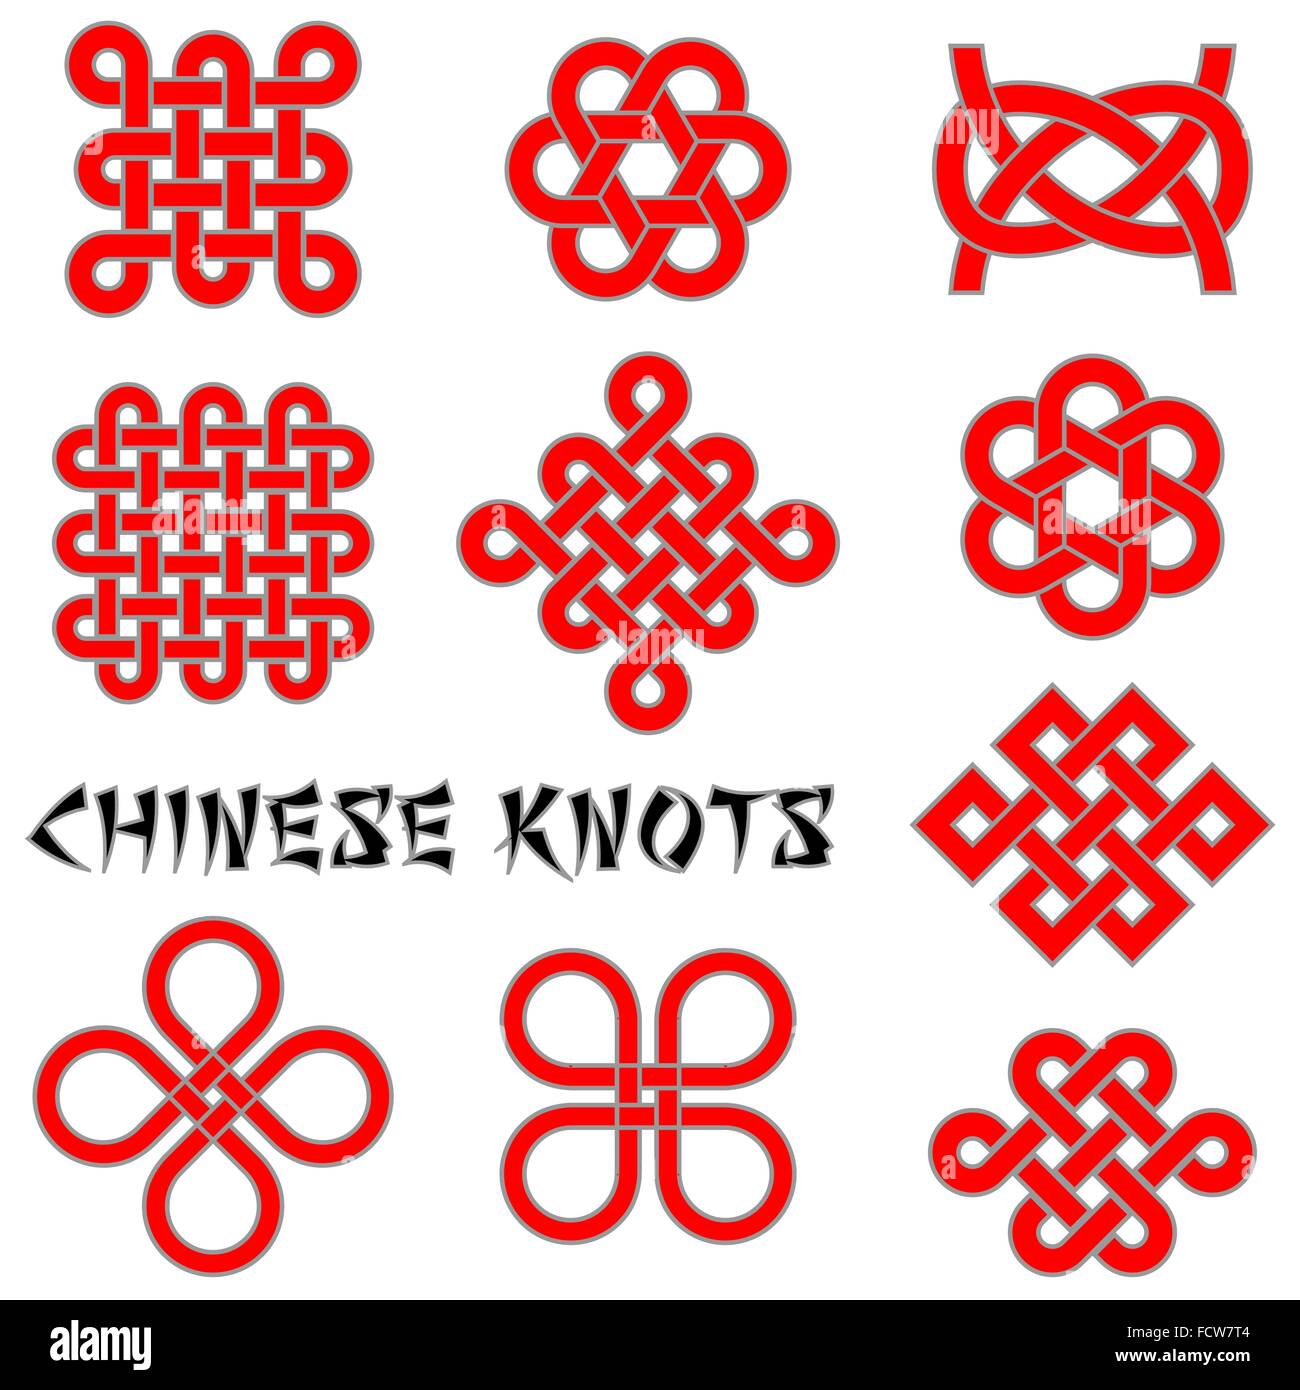 Chinesische Knoten (Kleeblatt, Blume Knoten, Endless Knot, etc.)-Kollektion für Ihr Design oder Projekt Stock Vektor